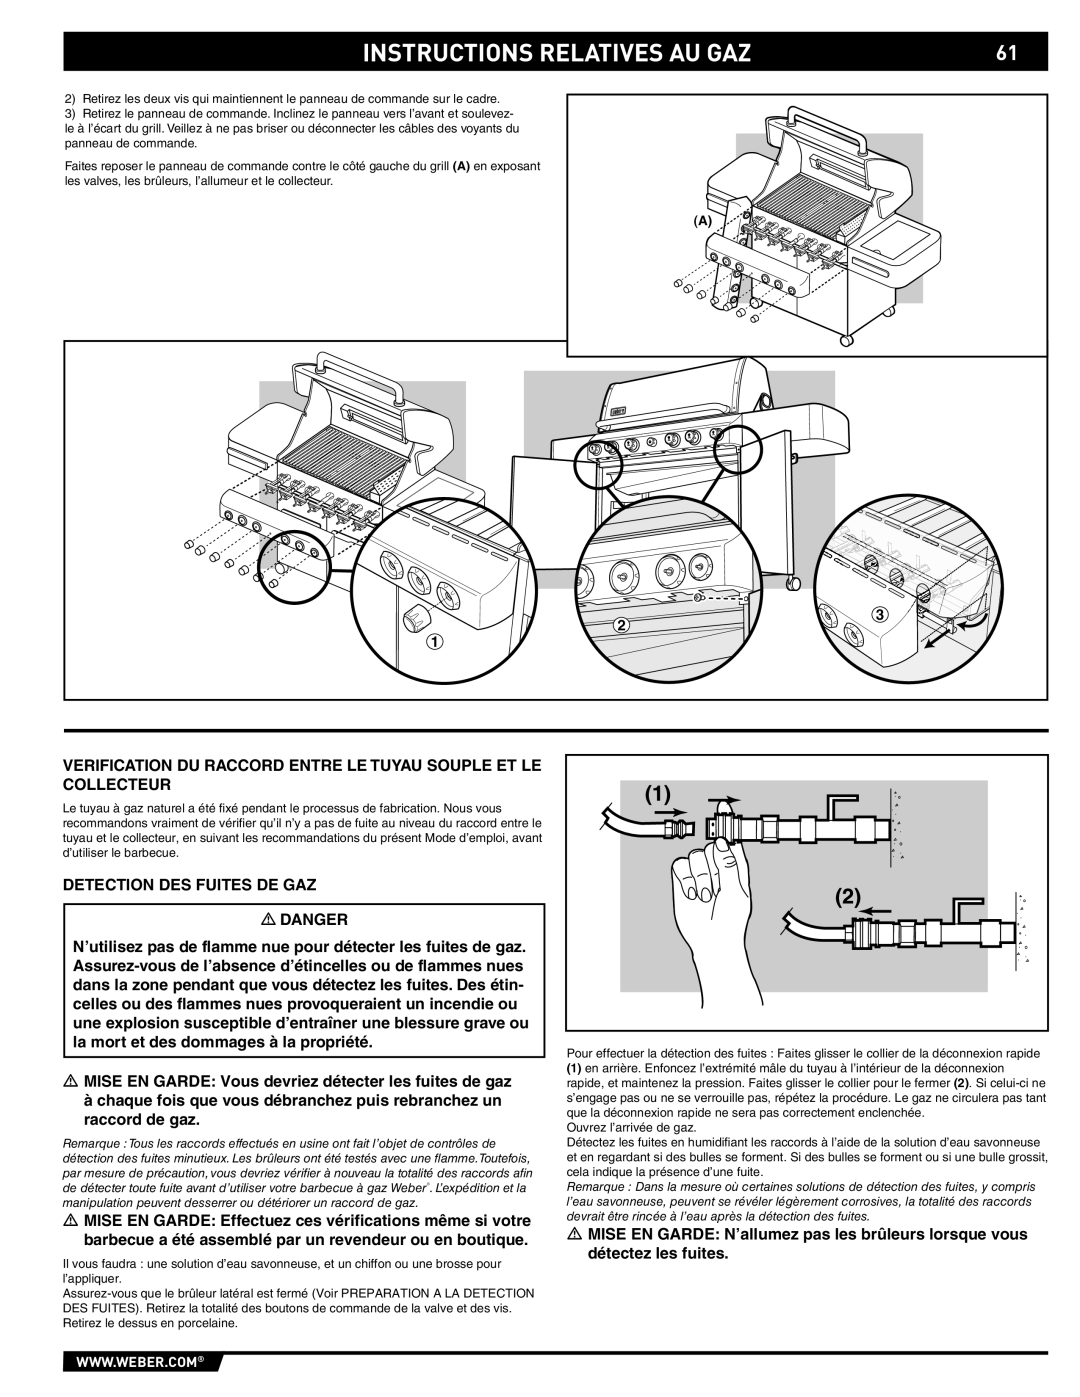 Weber S-470TM manual Instructions Relatives Au Gaz, Verification Du Raccord Entre Le Tuyau Souple Et Le Collecteur 